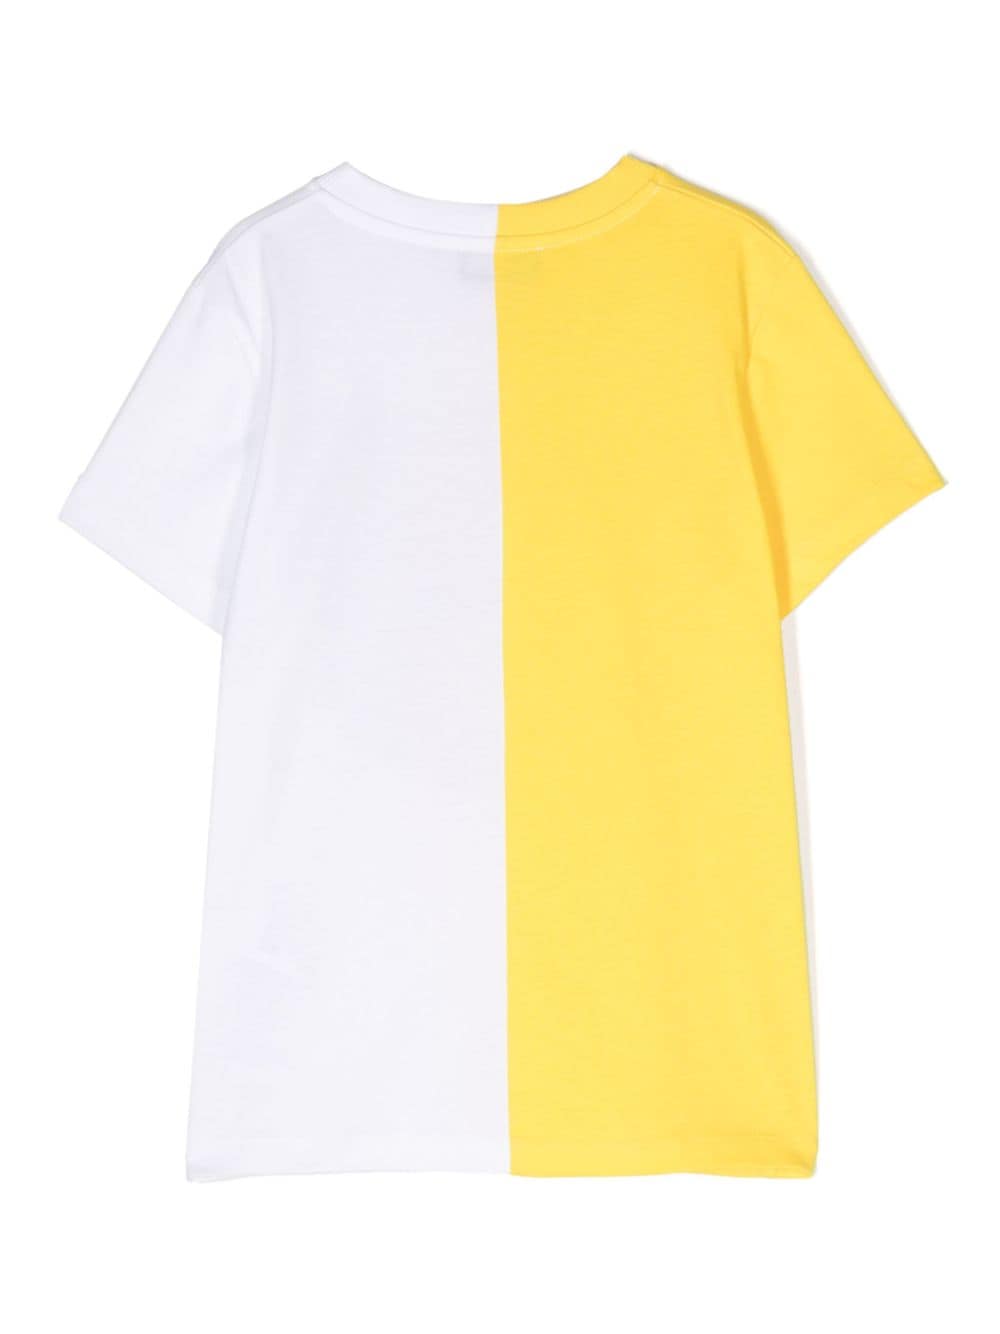 T-shirt bianca/gialla bambino